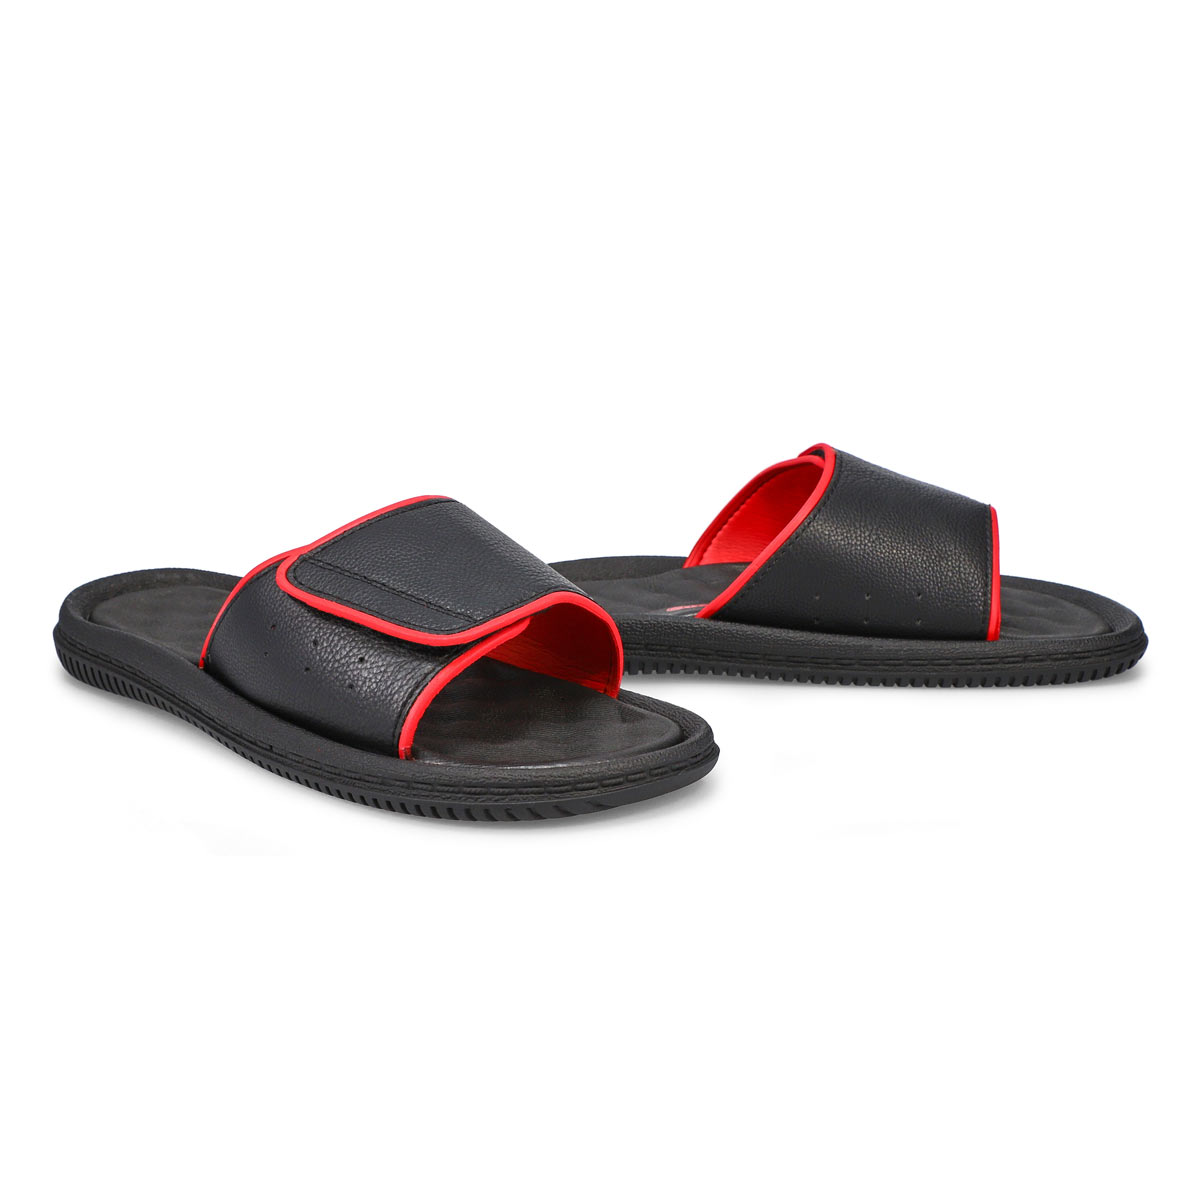 Men's Rory Slide Sandal - Black/Red